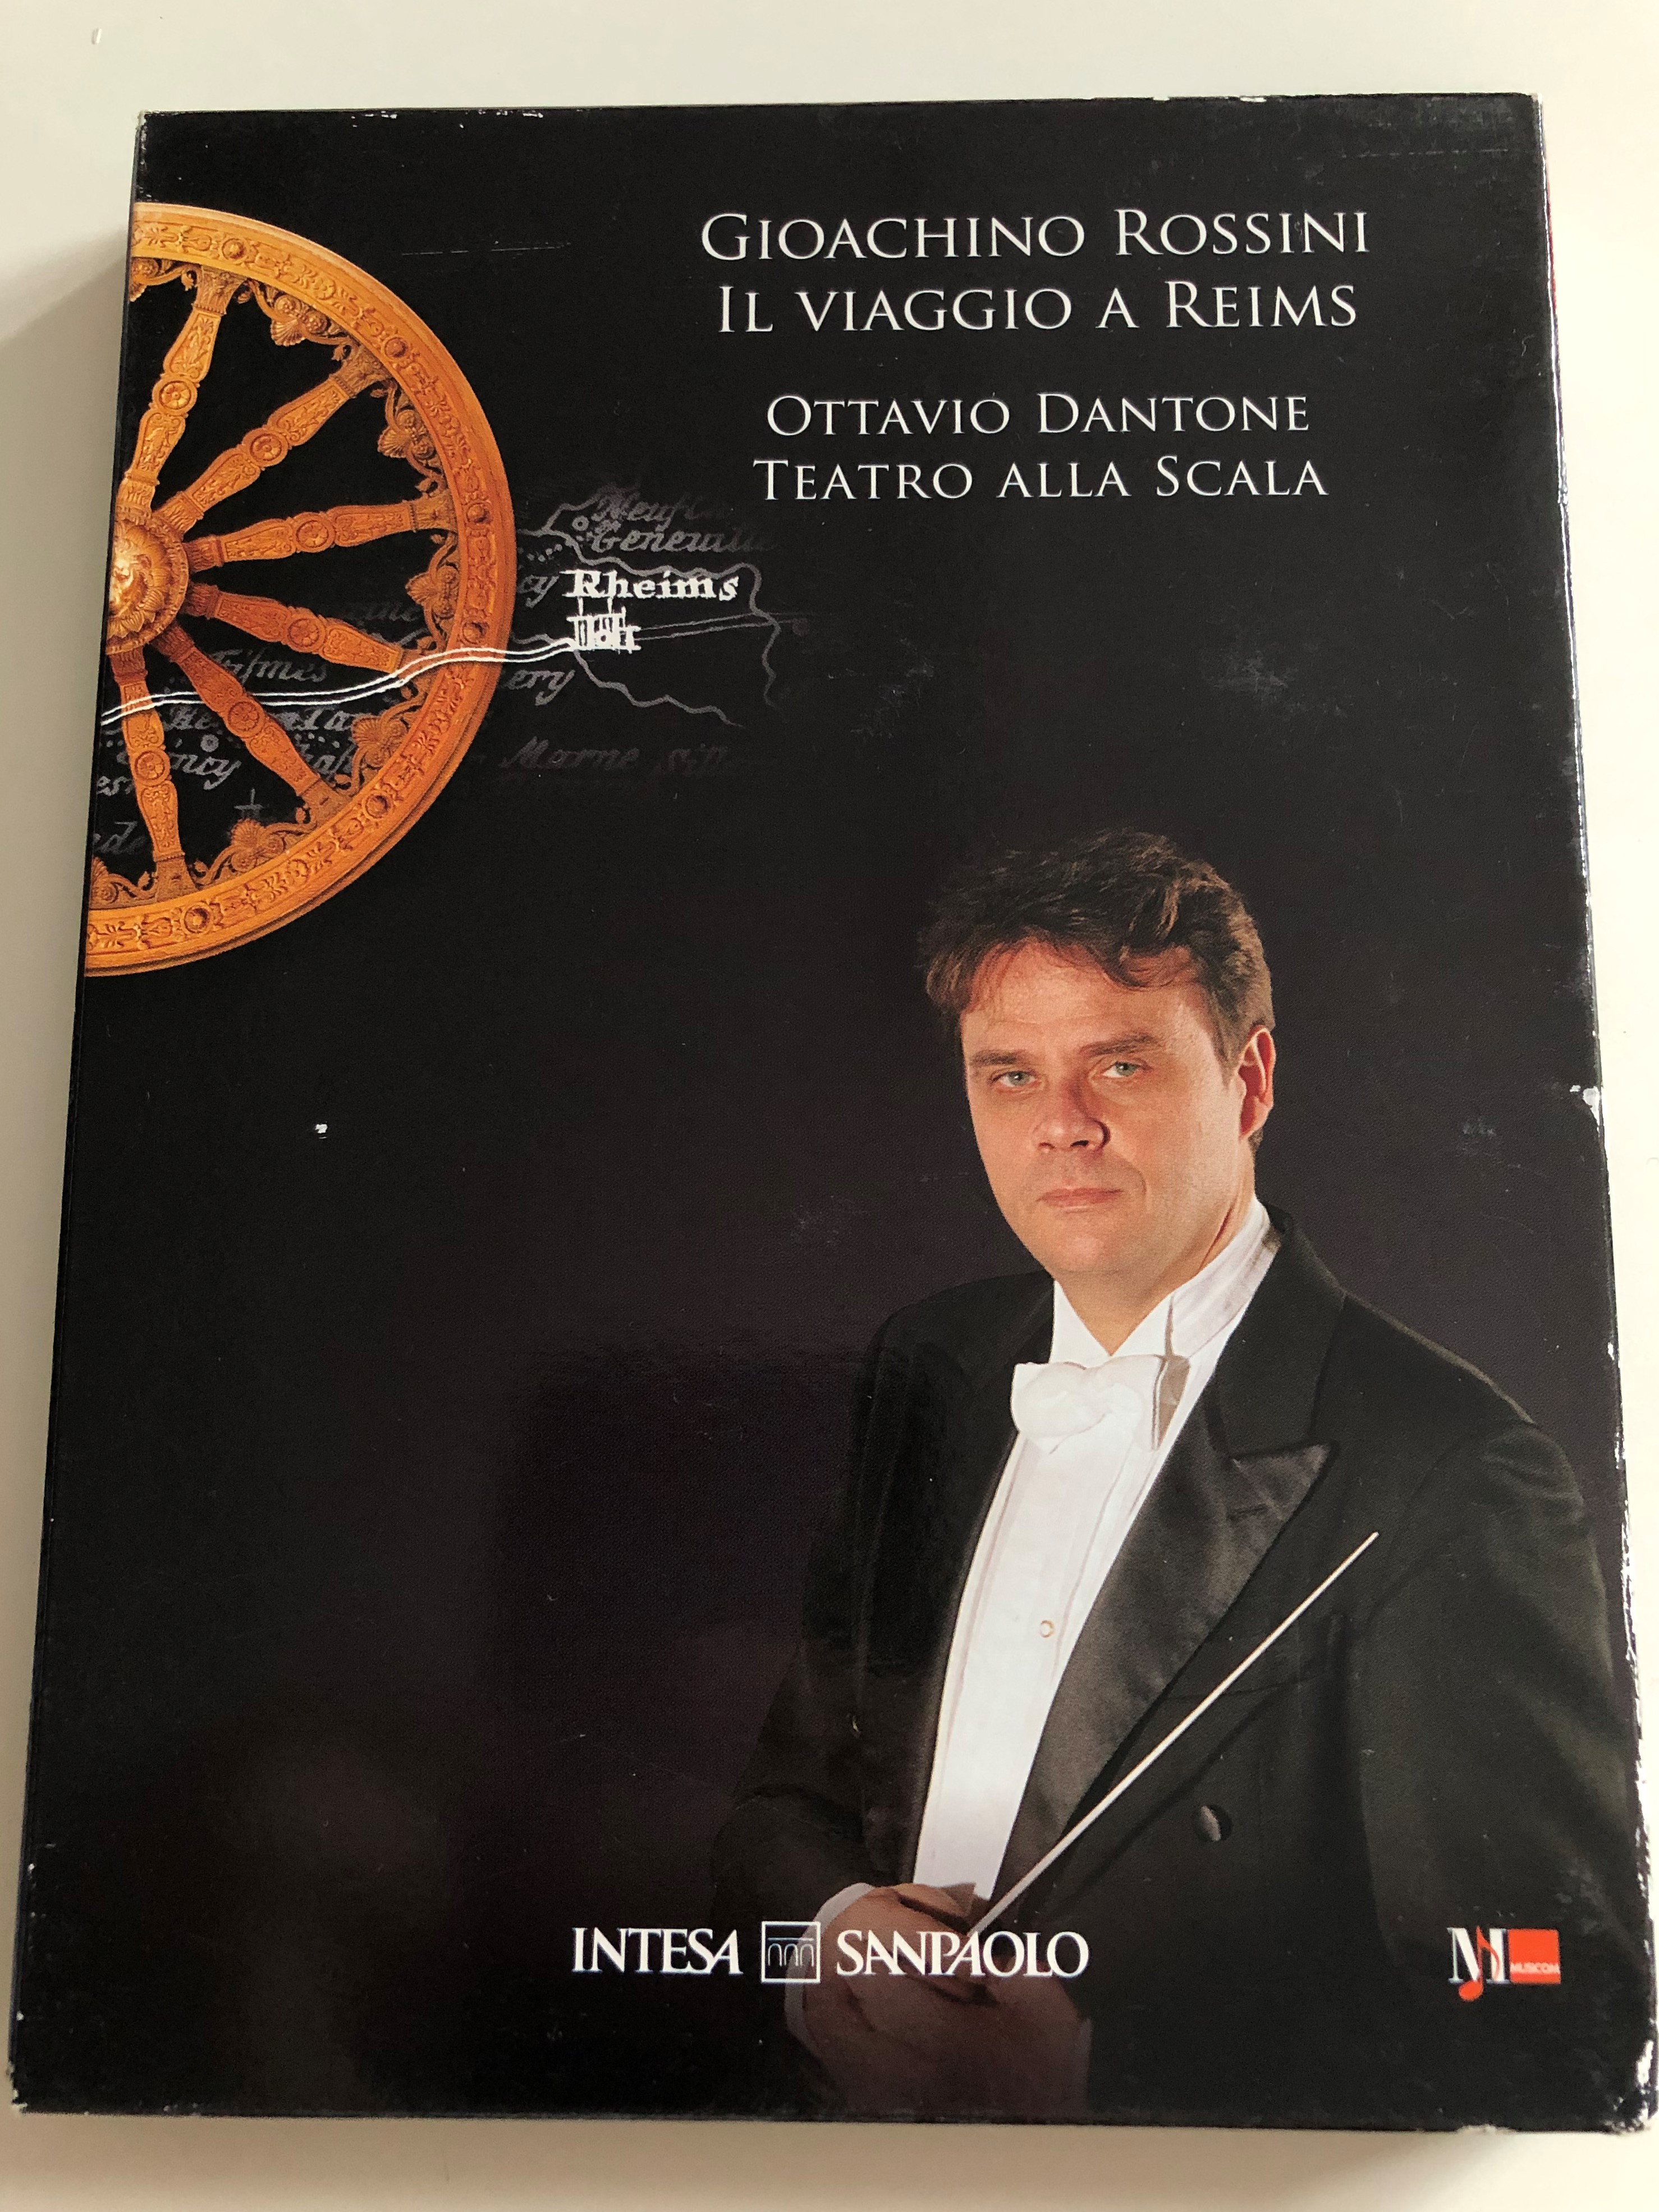 gioachino-rossini-il-viaggio-a-reims-dvd-cd-conducted-by-ottavio-dantone-teatro-alla-scala-live-recording-vox-imago-1-.jpg